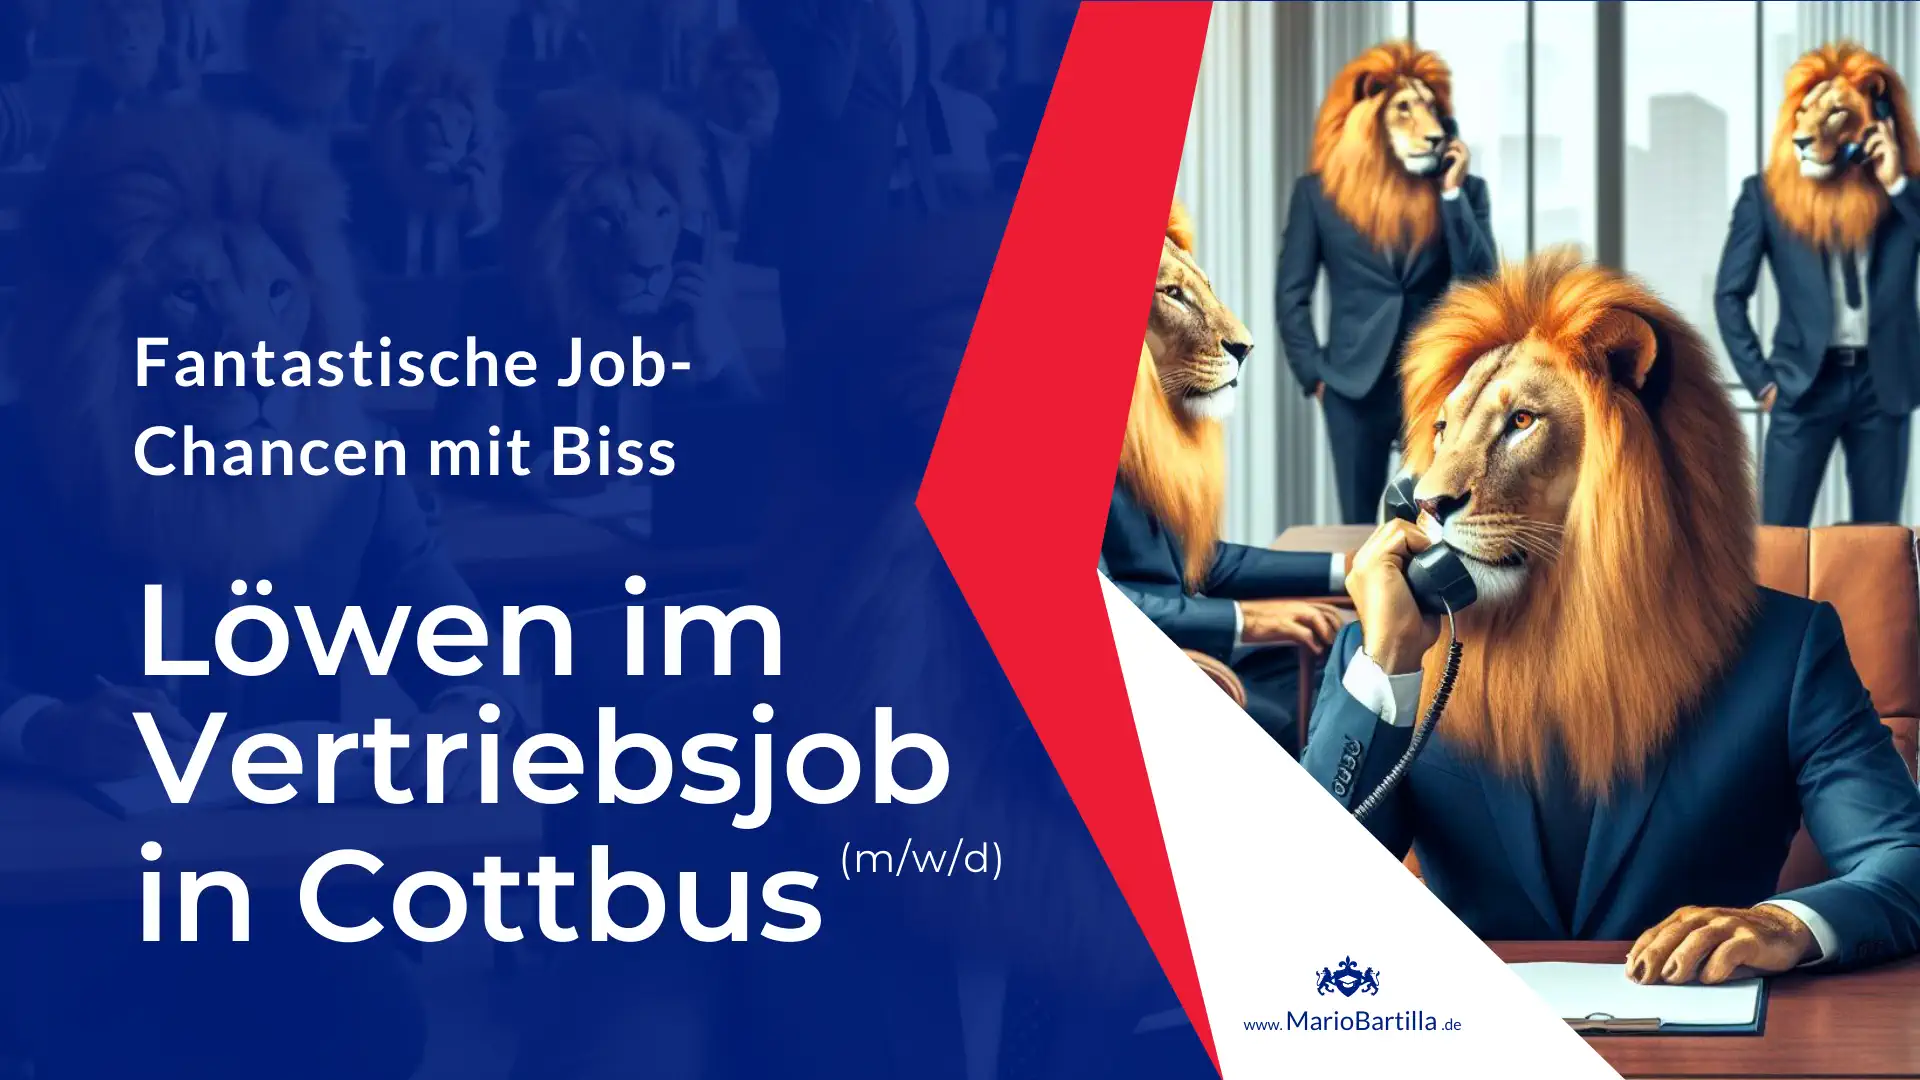 Vertriebssmitarbeiter, Sales manager, Kundenberater in Cottbus ist deine ganz besondere Job-Chance mit Karriere